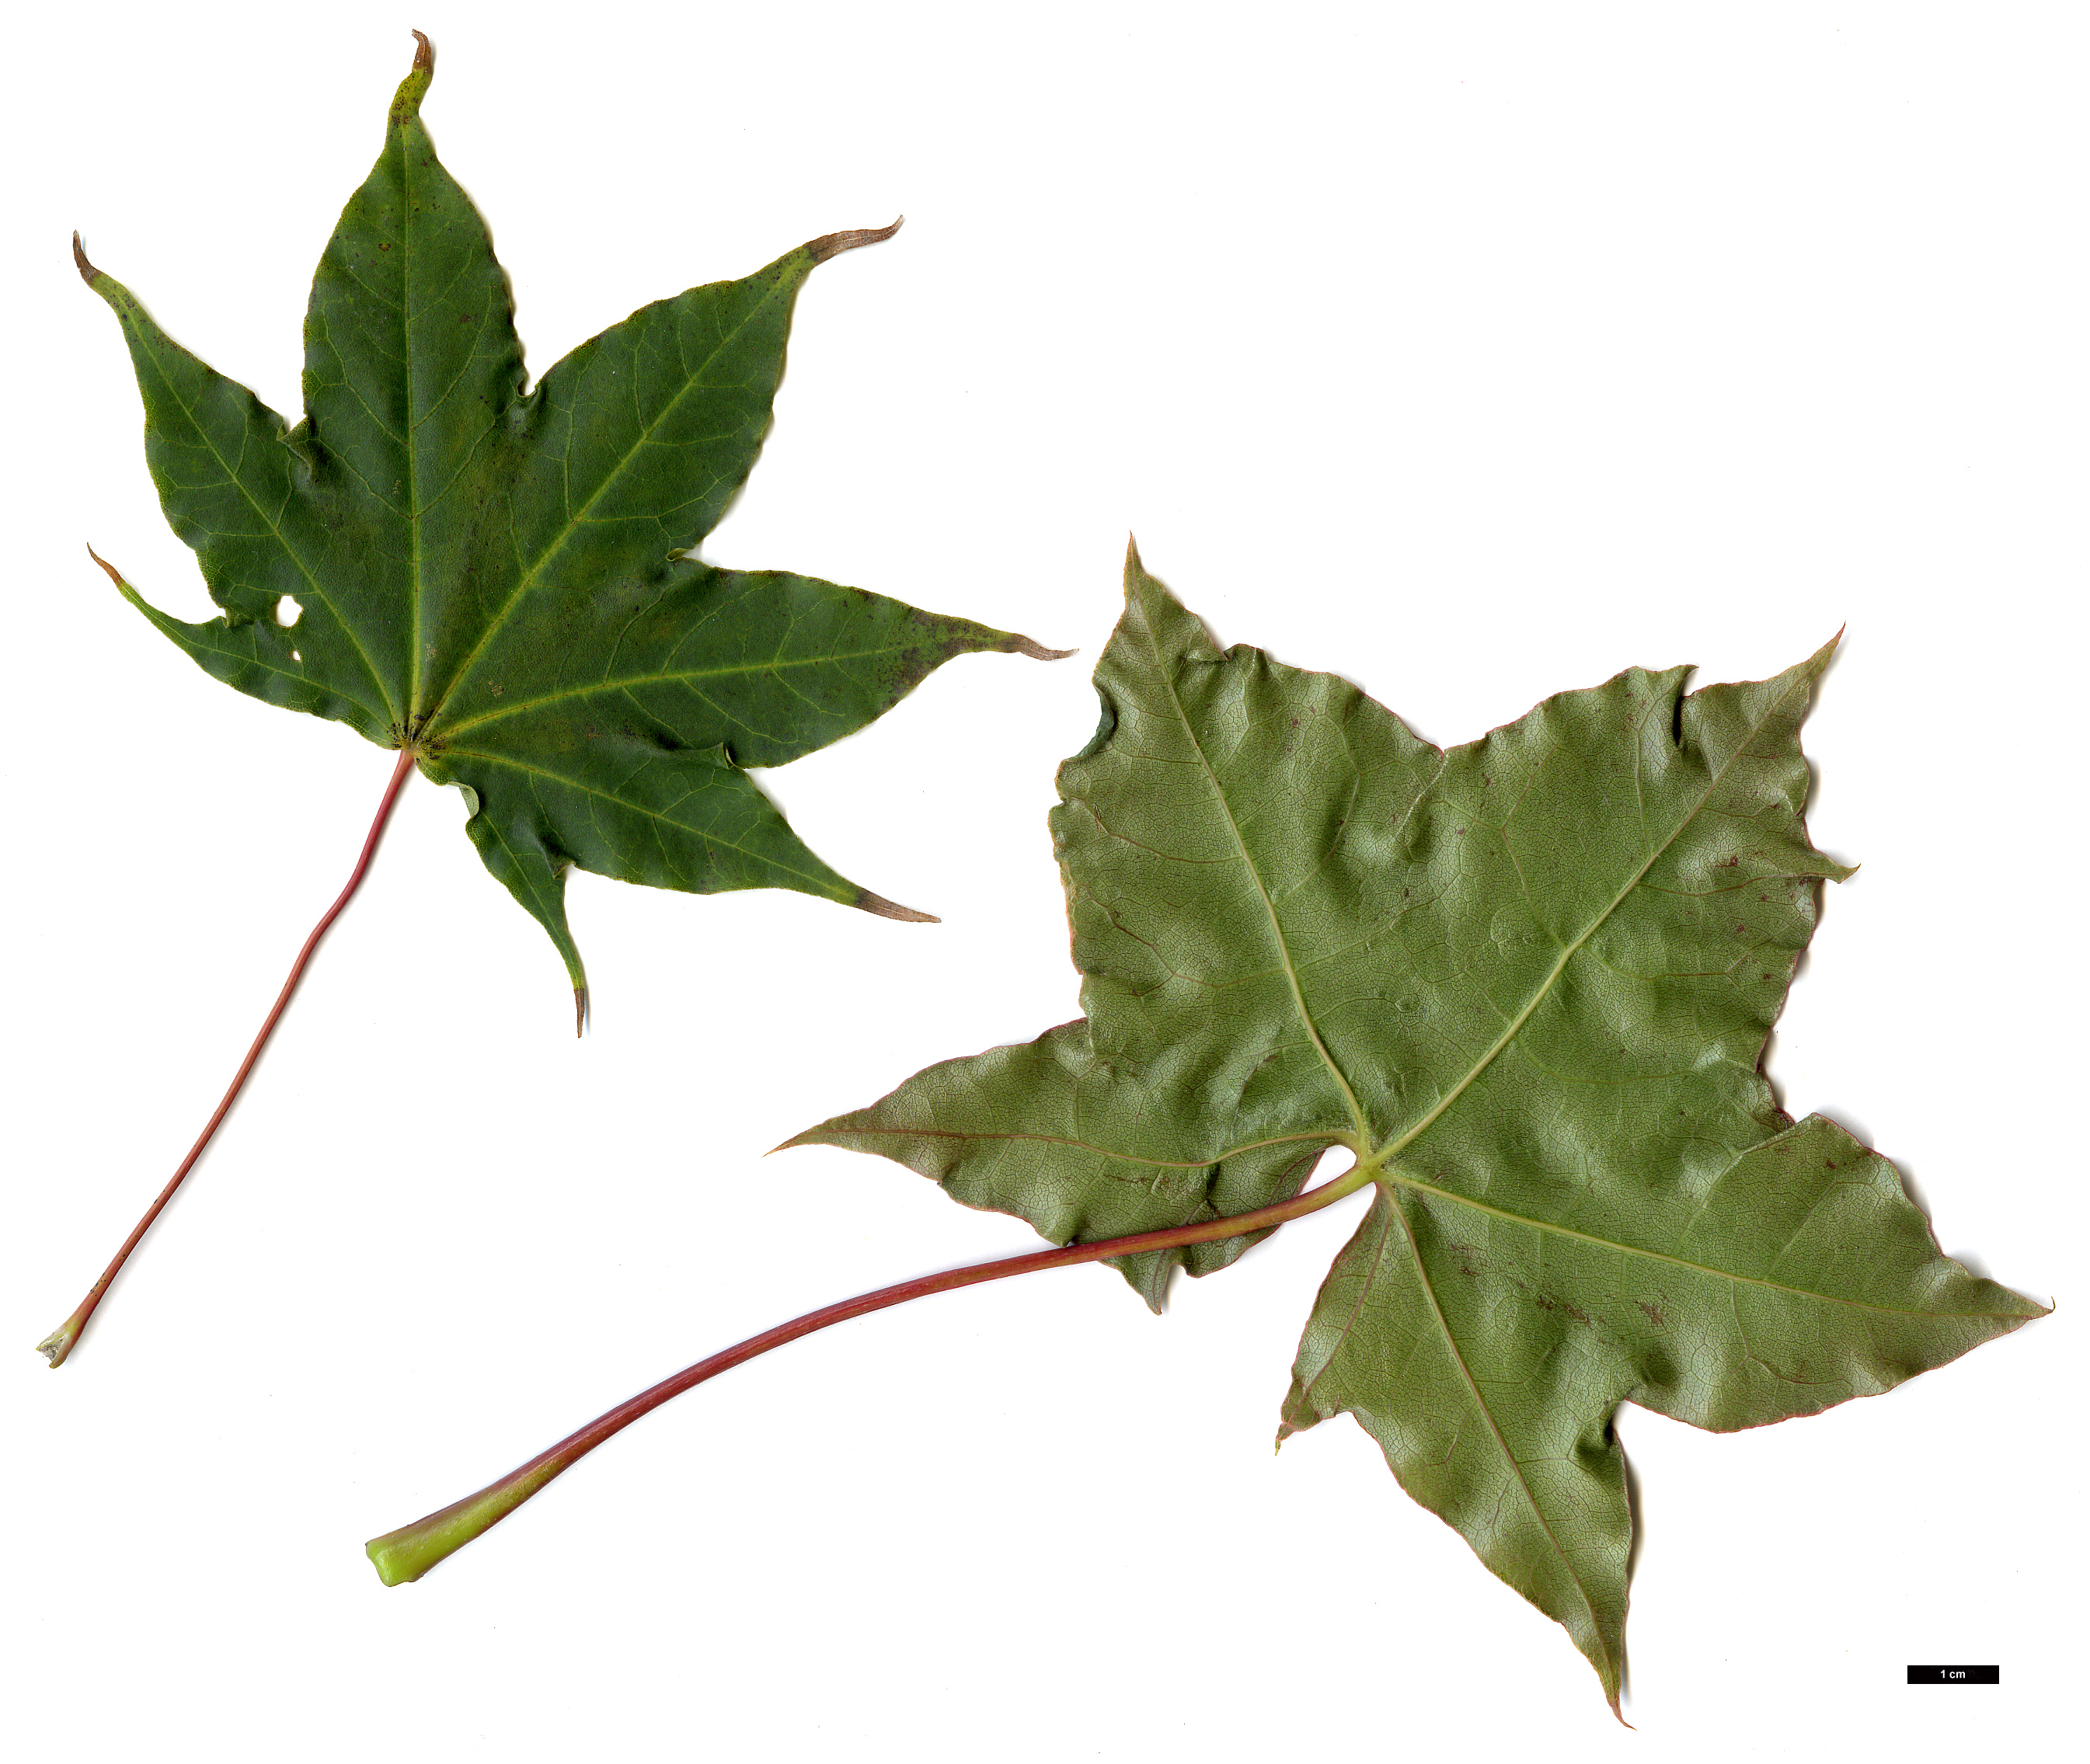 High resolution image: Family: Sapindaceae - Genus: Acer - Taxon: cappadocicum - SpeciesSub: subsp. cappadocicum